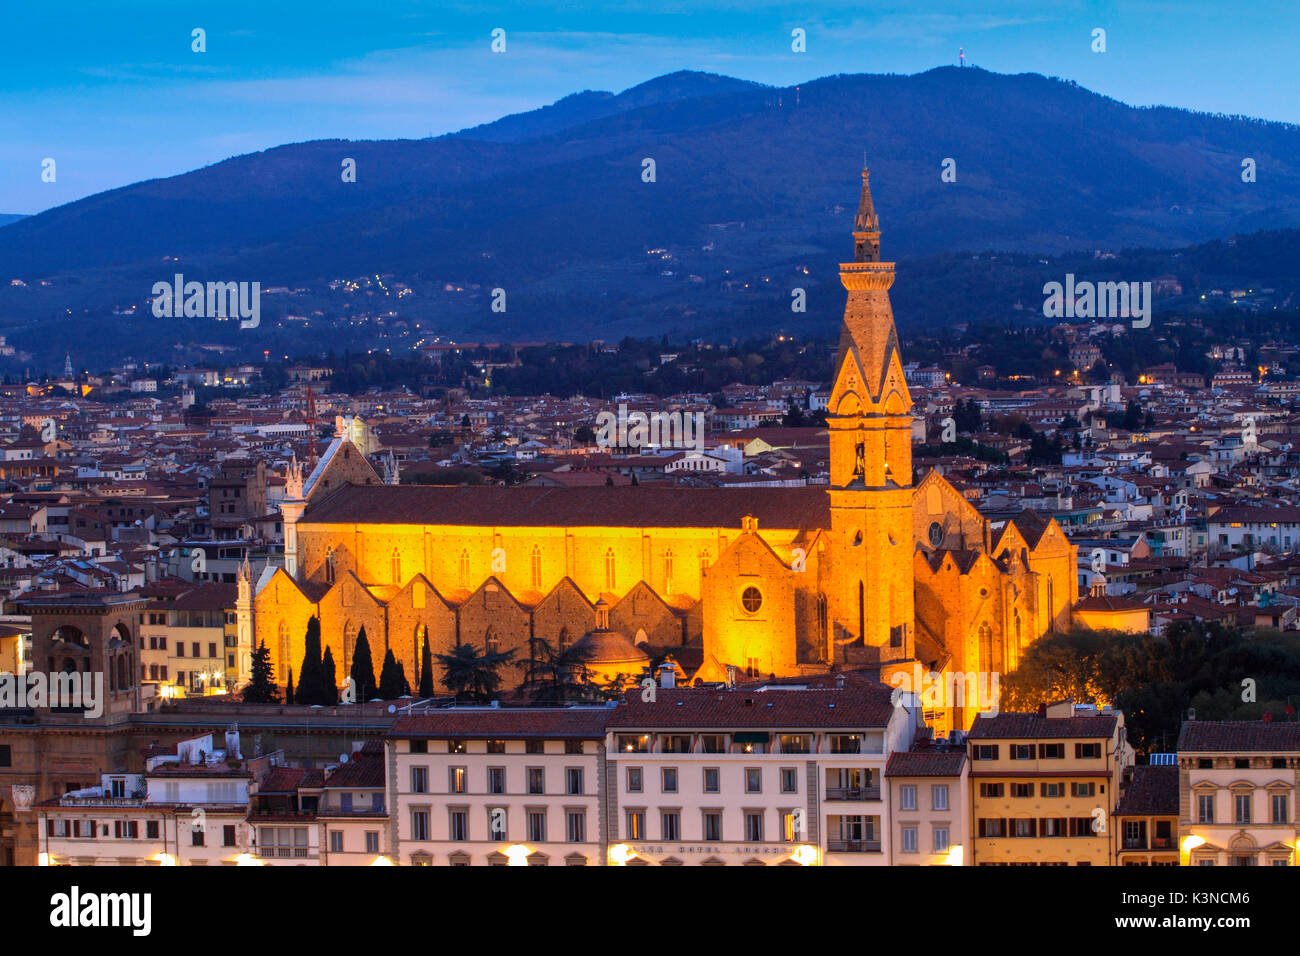 Europa, Italia, Toscana. La basílica de San Lorenzo, por la noche, en el centro histórico de Florencia - ciudad de arte de la Toscana Foto de stock